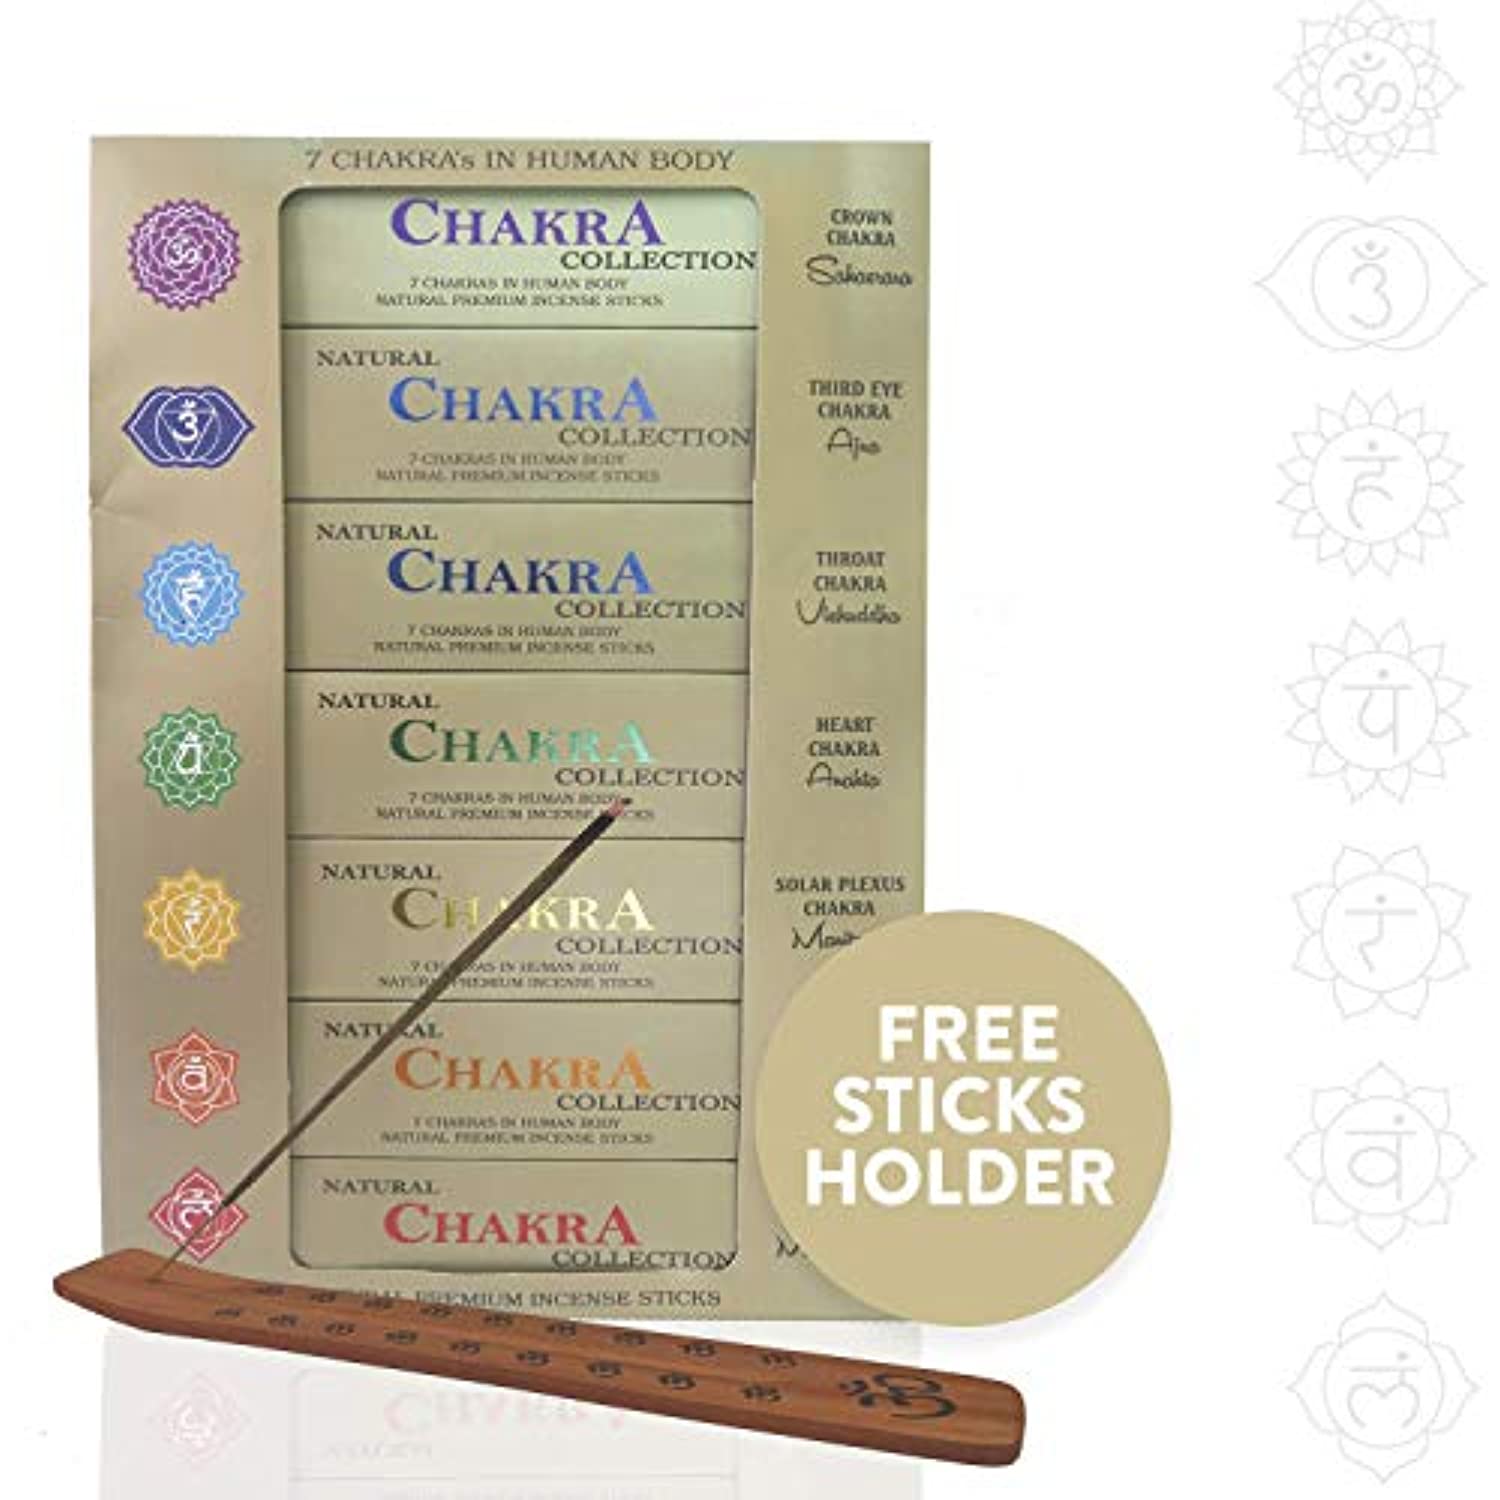 Hem 7 varillas de incienso de chakras Agarbatti Masala de calidad  enrolladas a mano en la India para curación, meditación, yoga, relajación,  oración